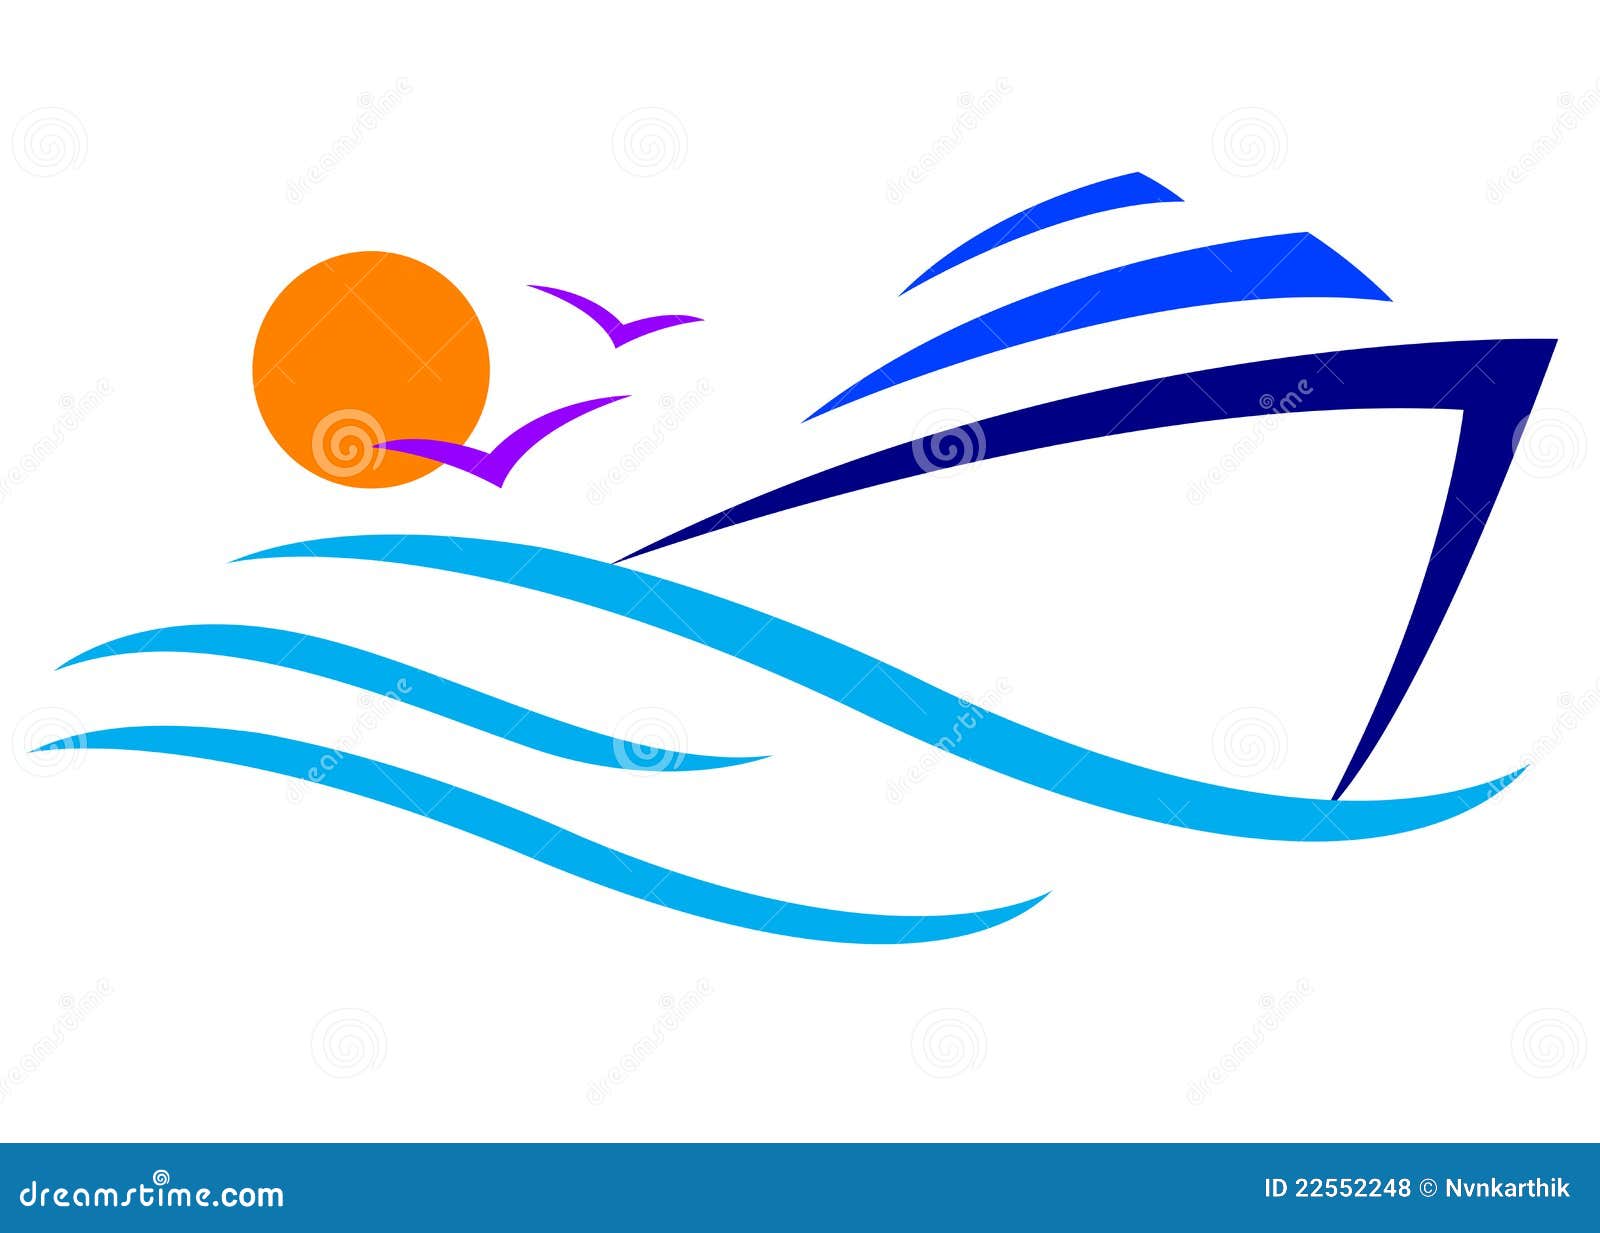 Illustration of boat logo design isolated on white background.